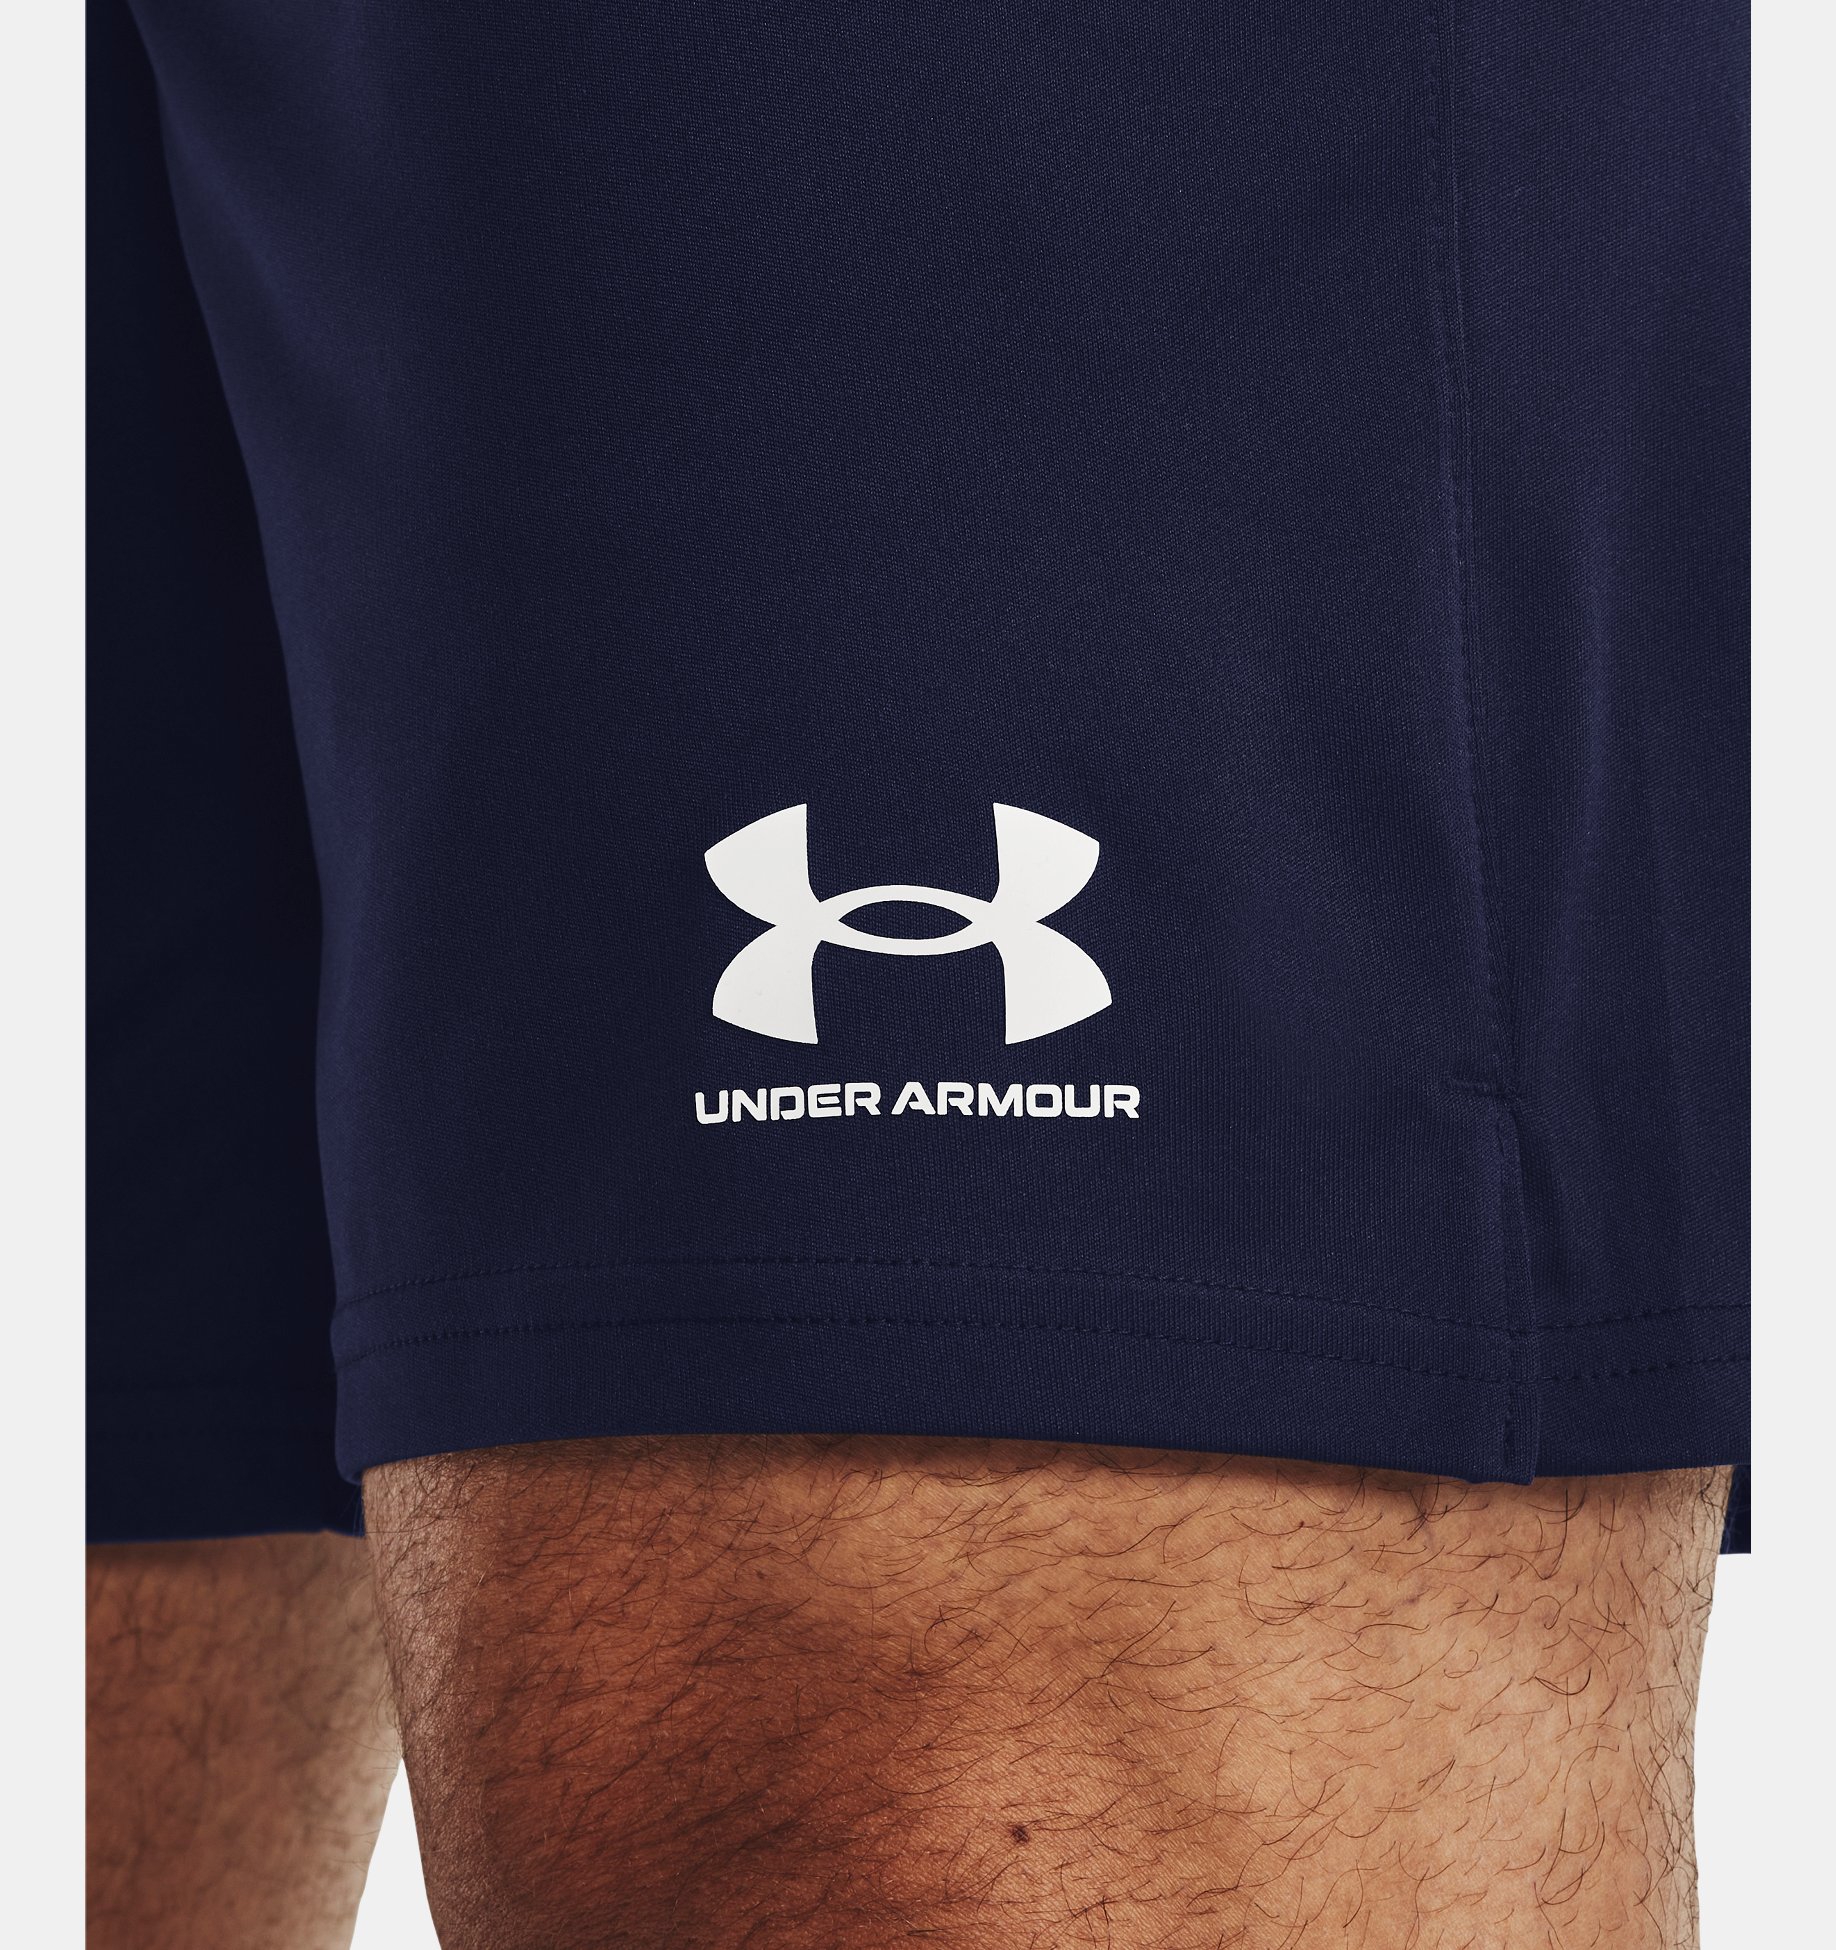 Men's UA Challenger Core Shorts